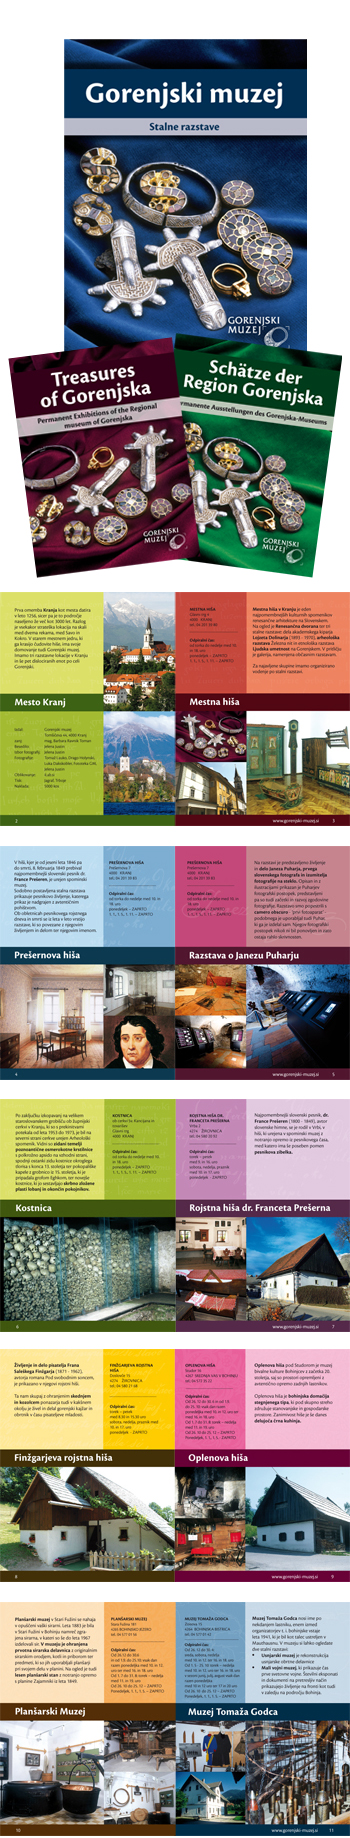 Predstavitvena brošura Gorenjskega muzeja Kranj